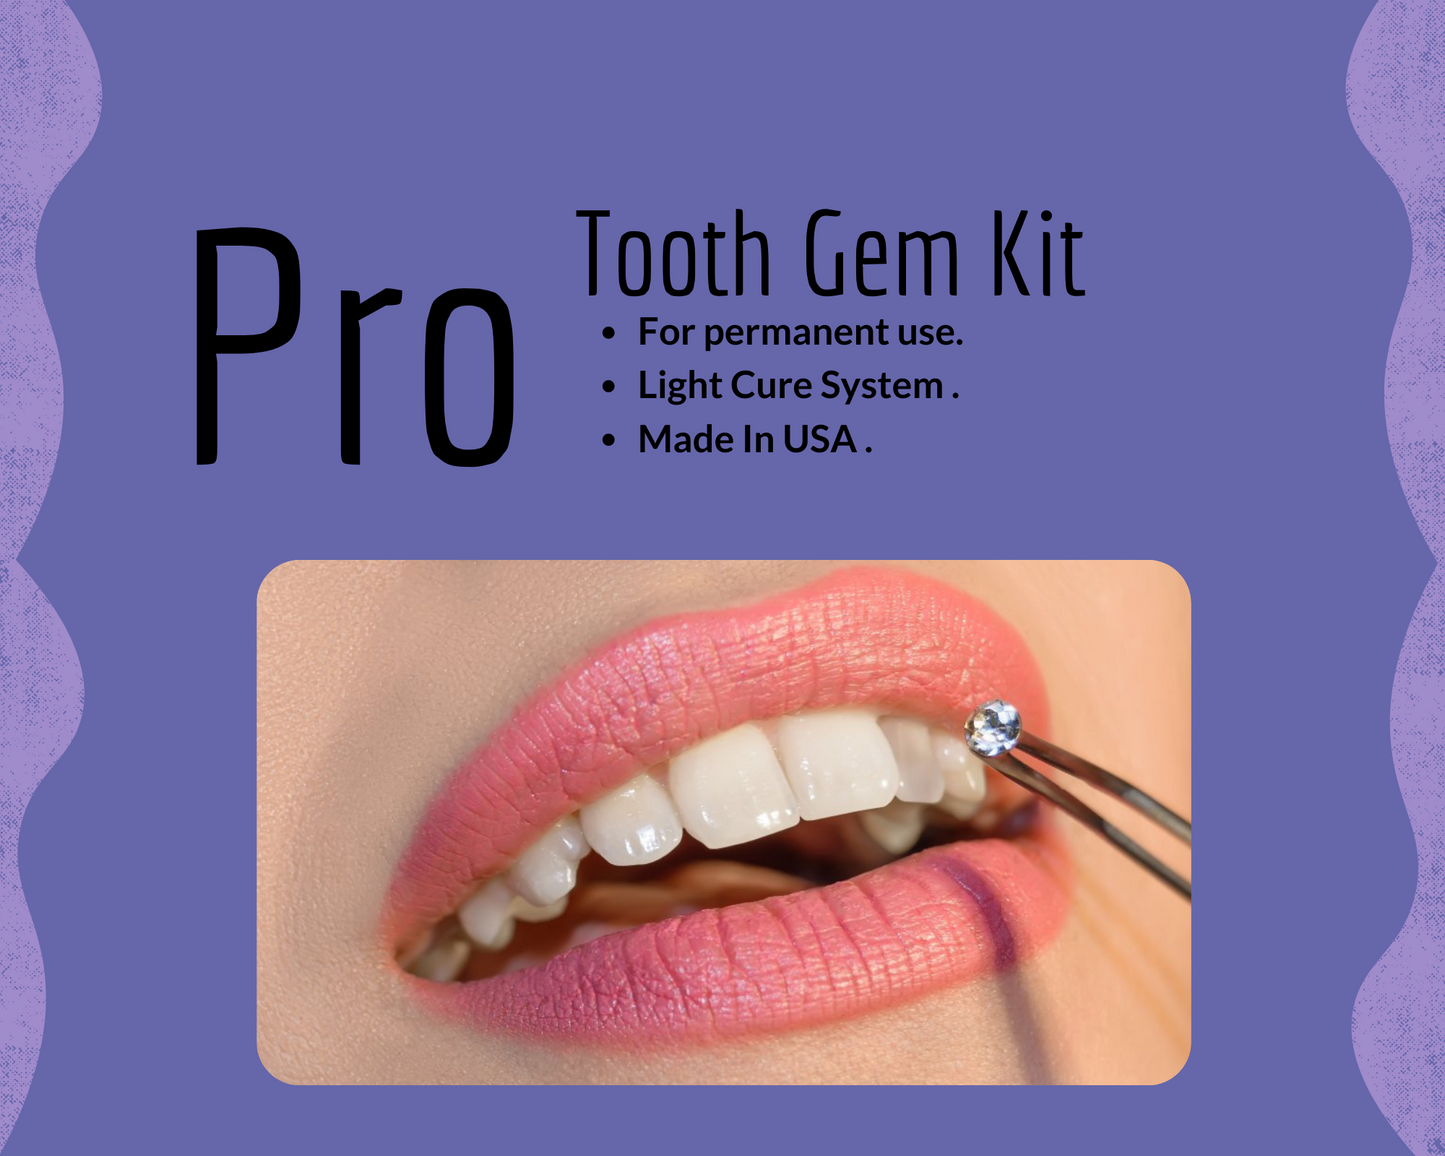 Tooth Gem Supplies – OS company